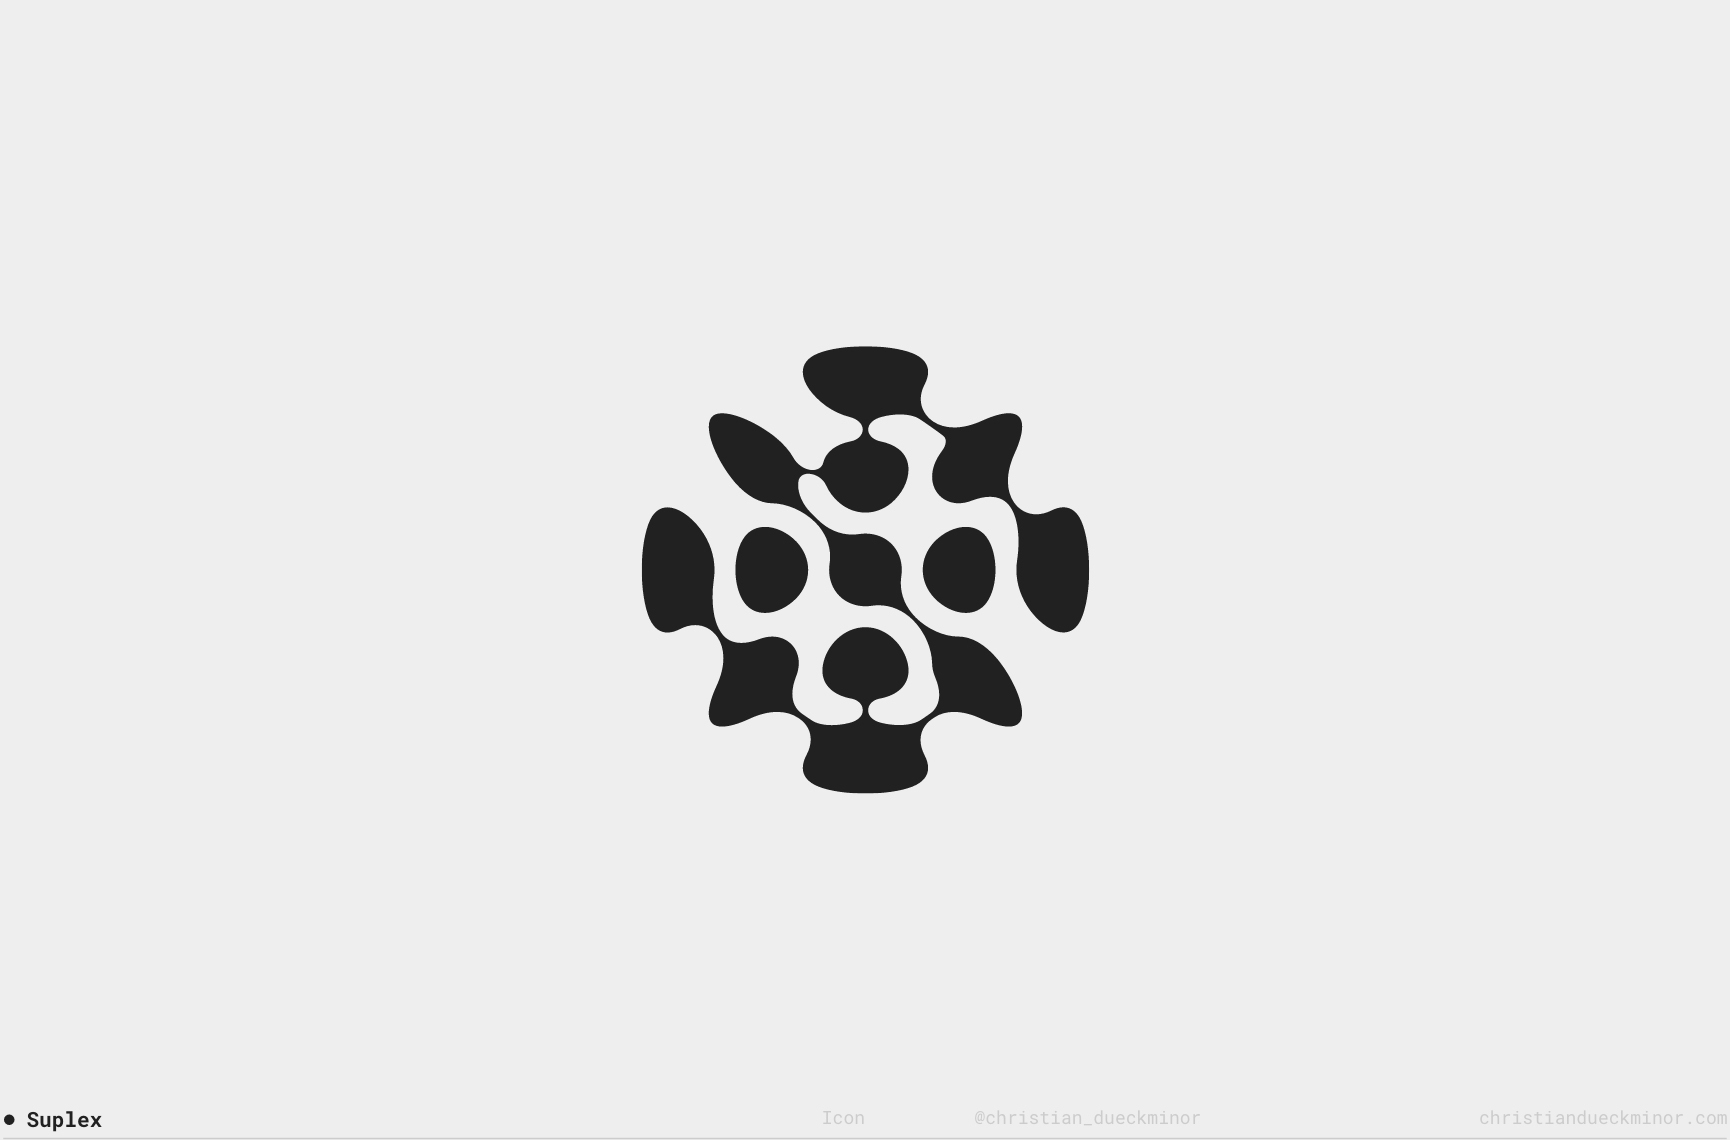 Christian-Dueckminor-Logo-Collection-02-01